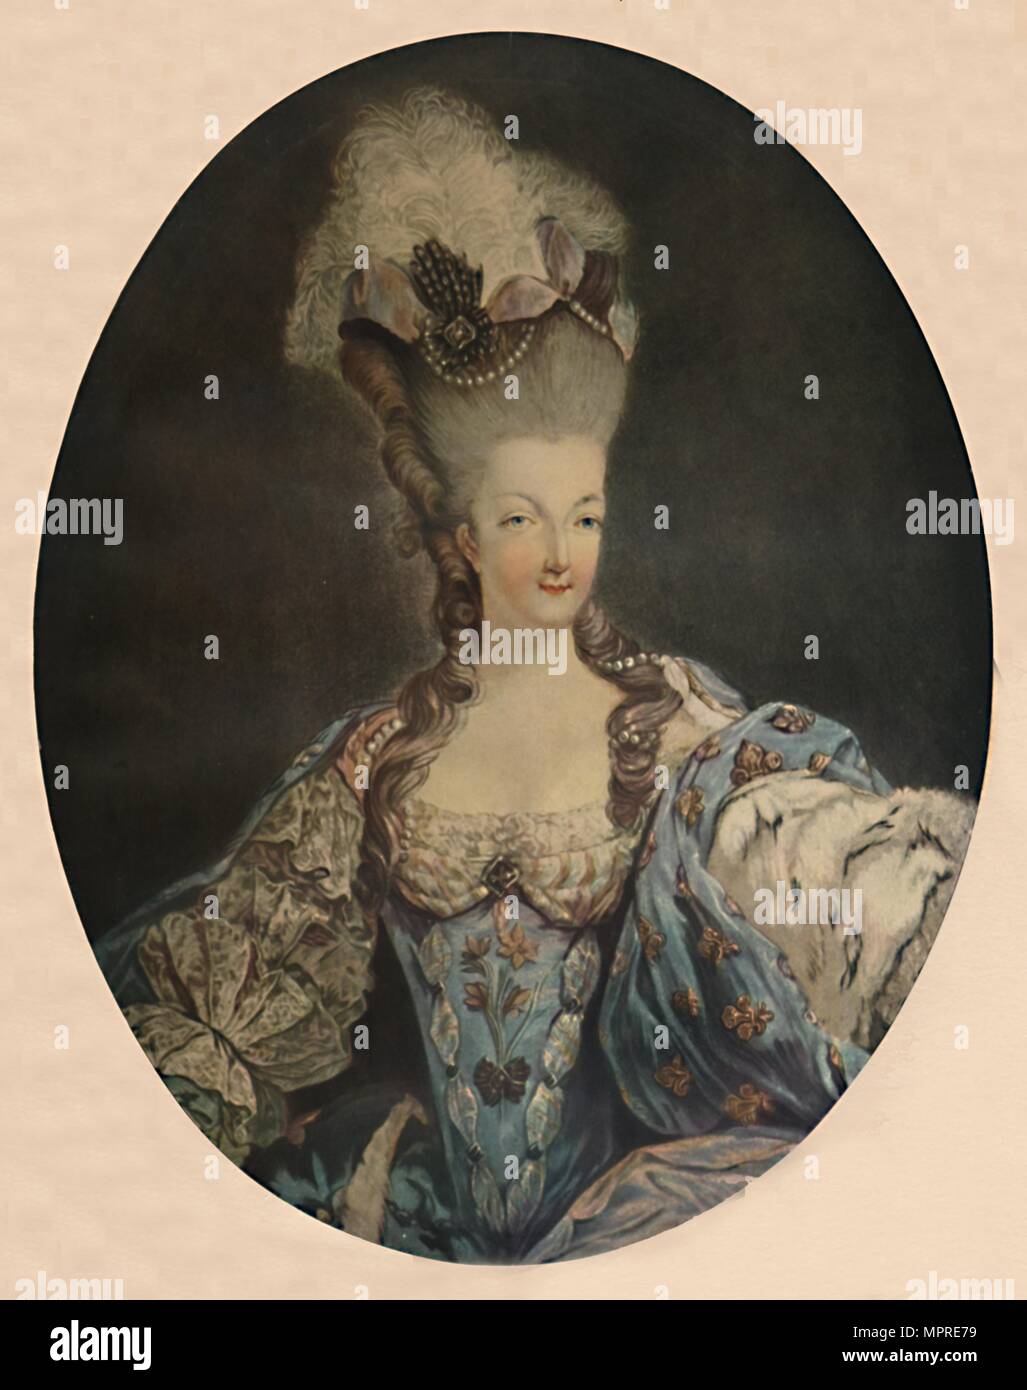 'Marie Antoinette, Queen of France', 1777, (1913). Artist: Jean Francois Janinet. Stock Photo